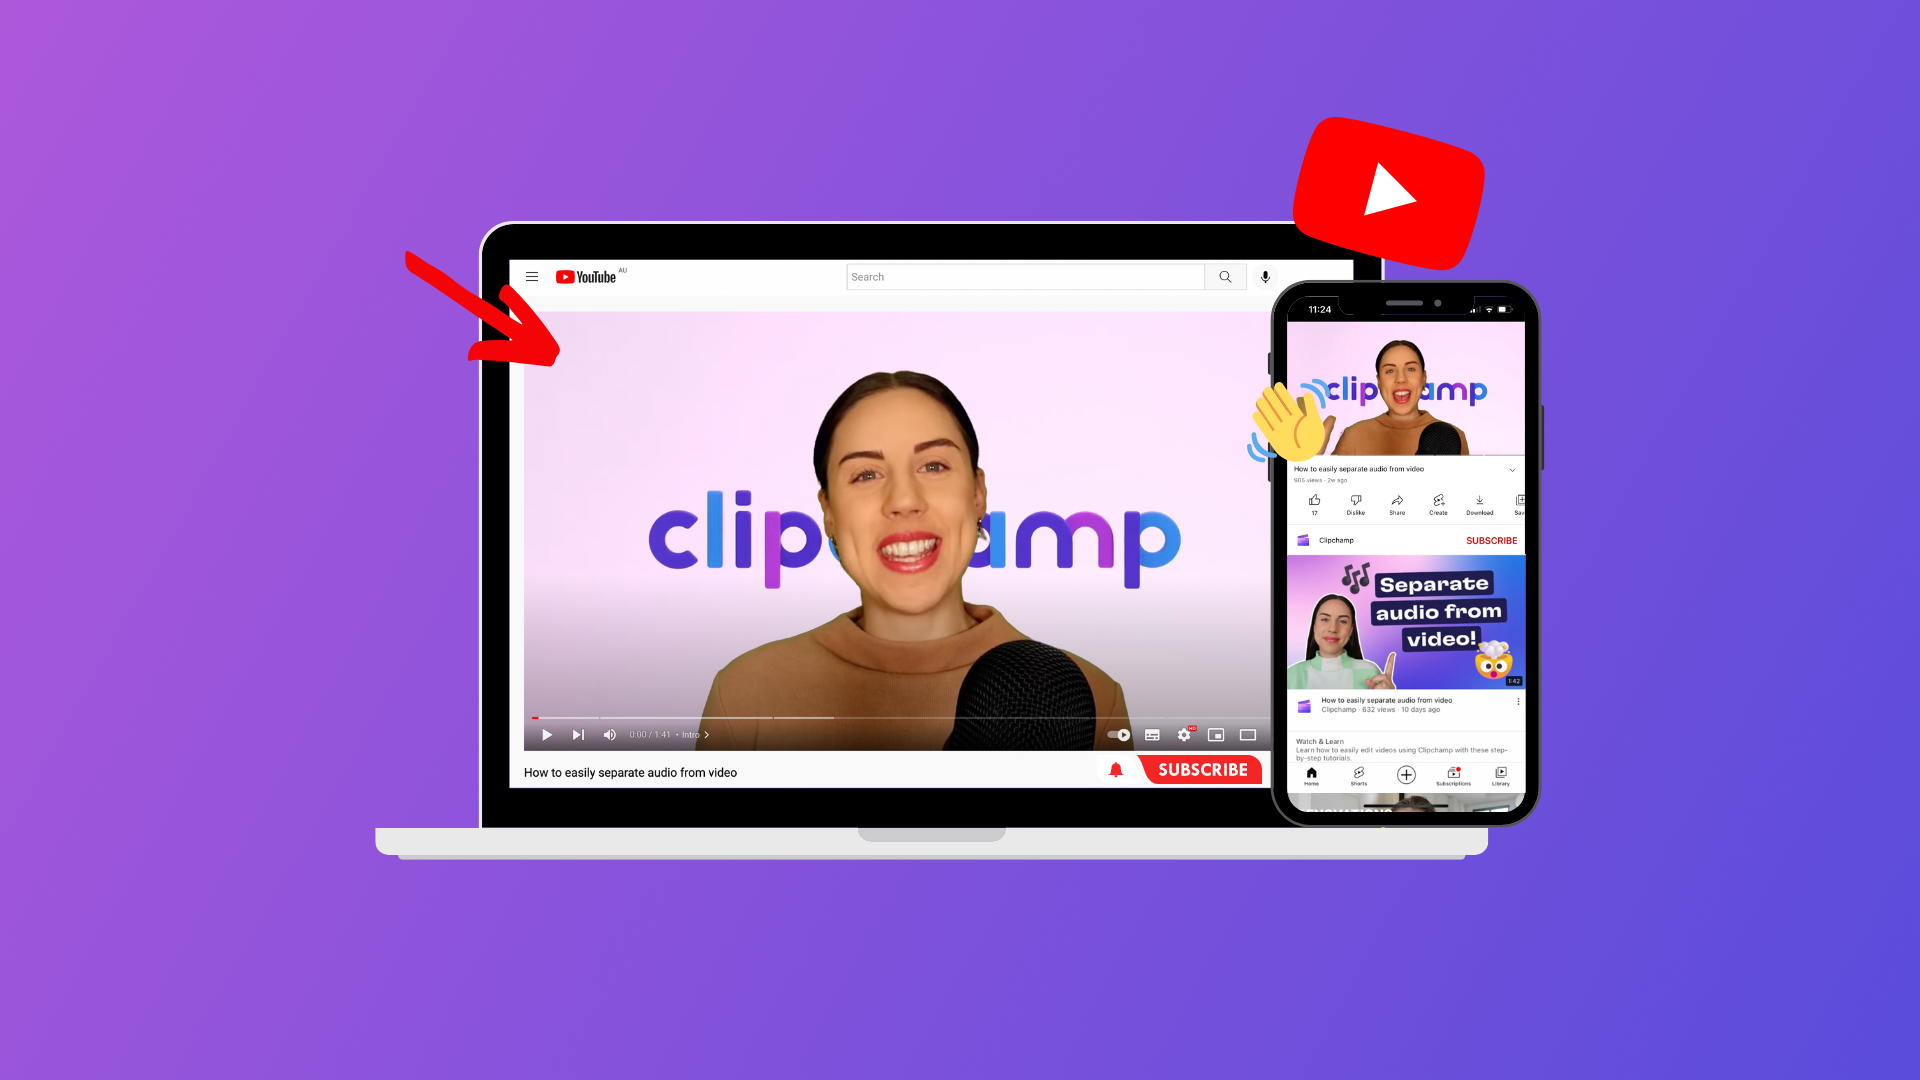 Come realizzare una intro per YouTube | Clipchamp